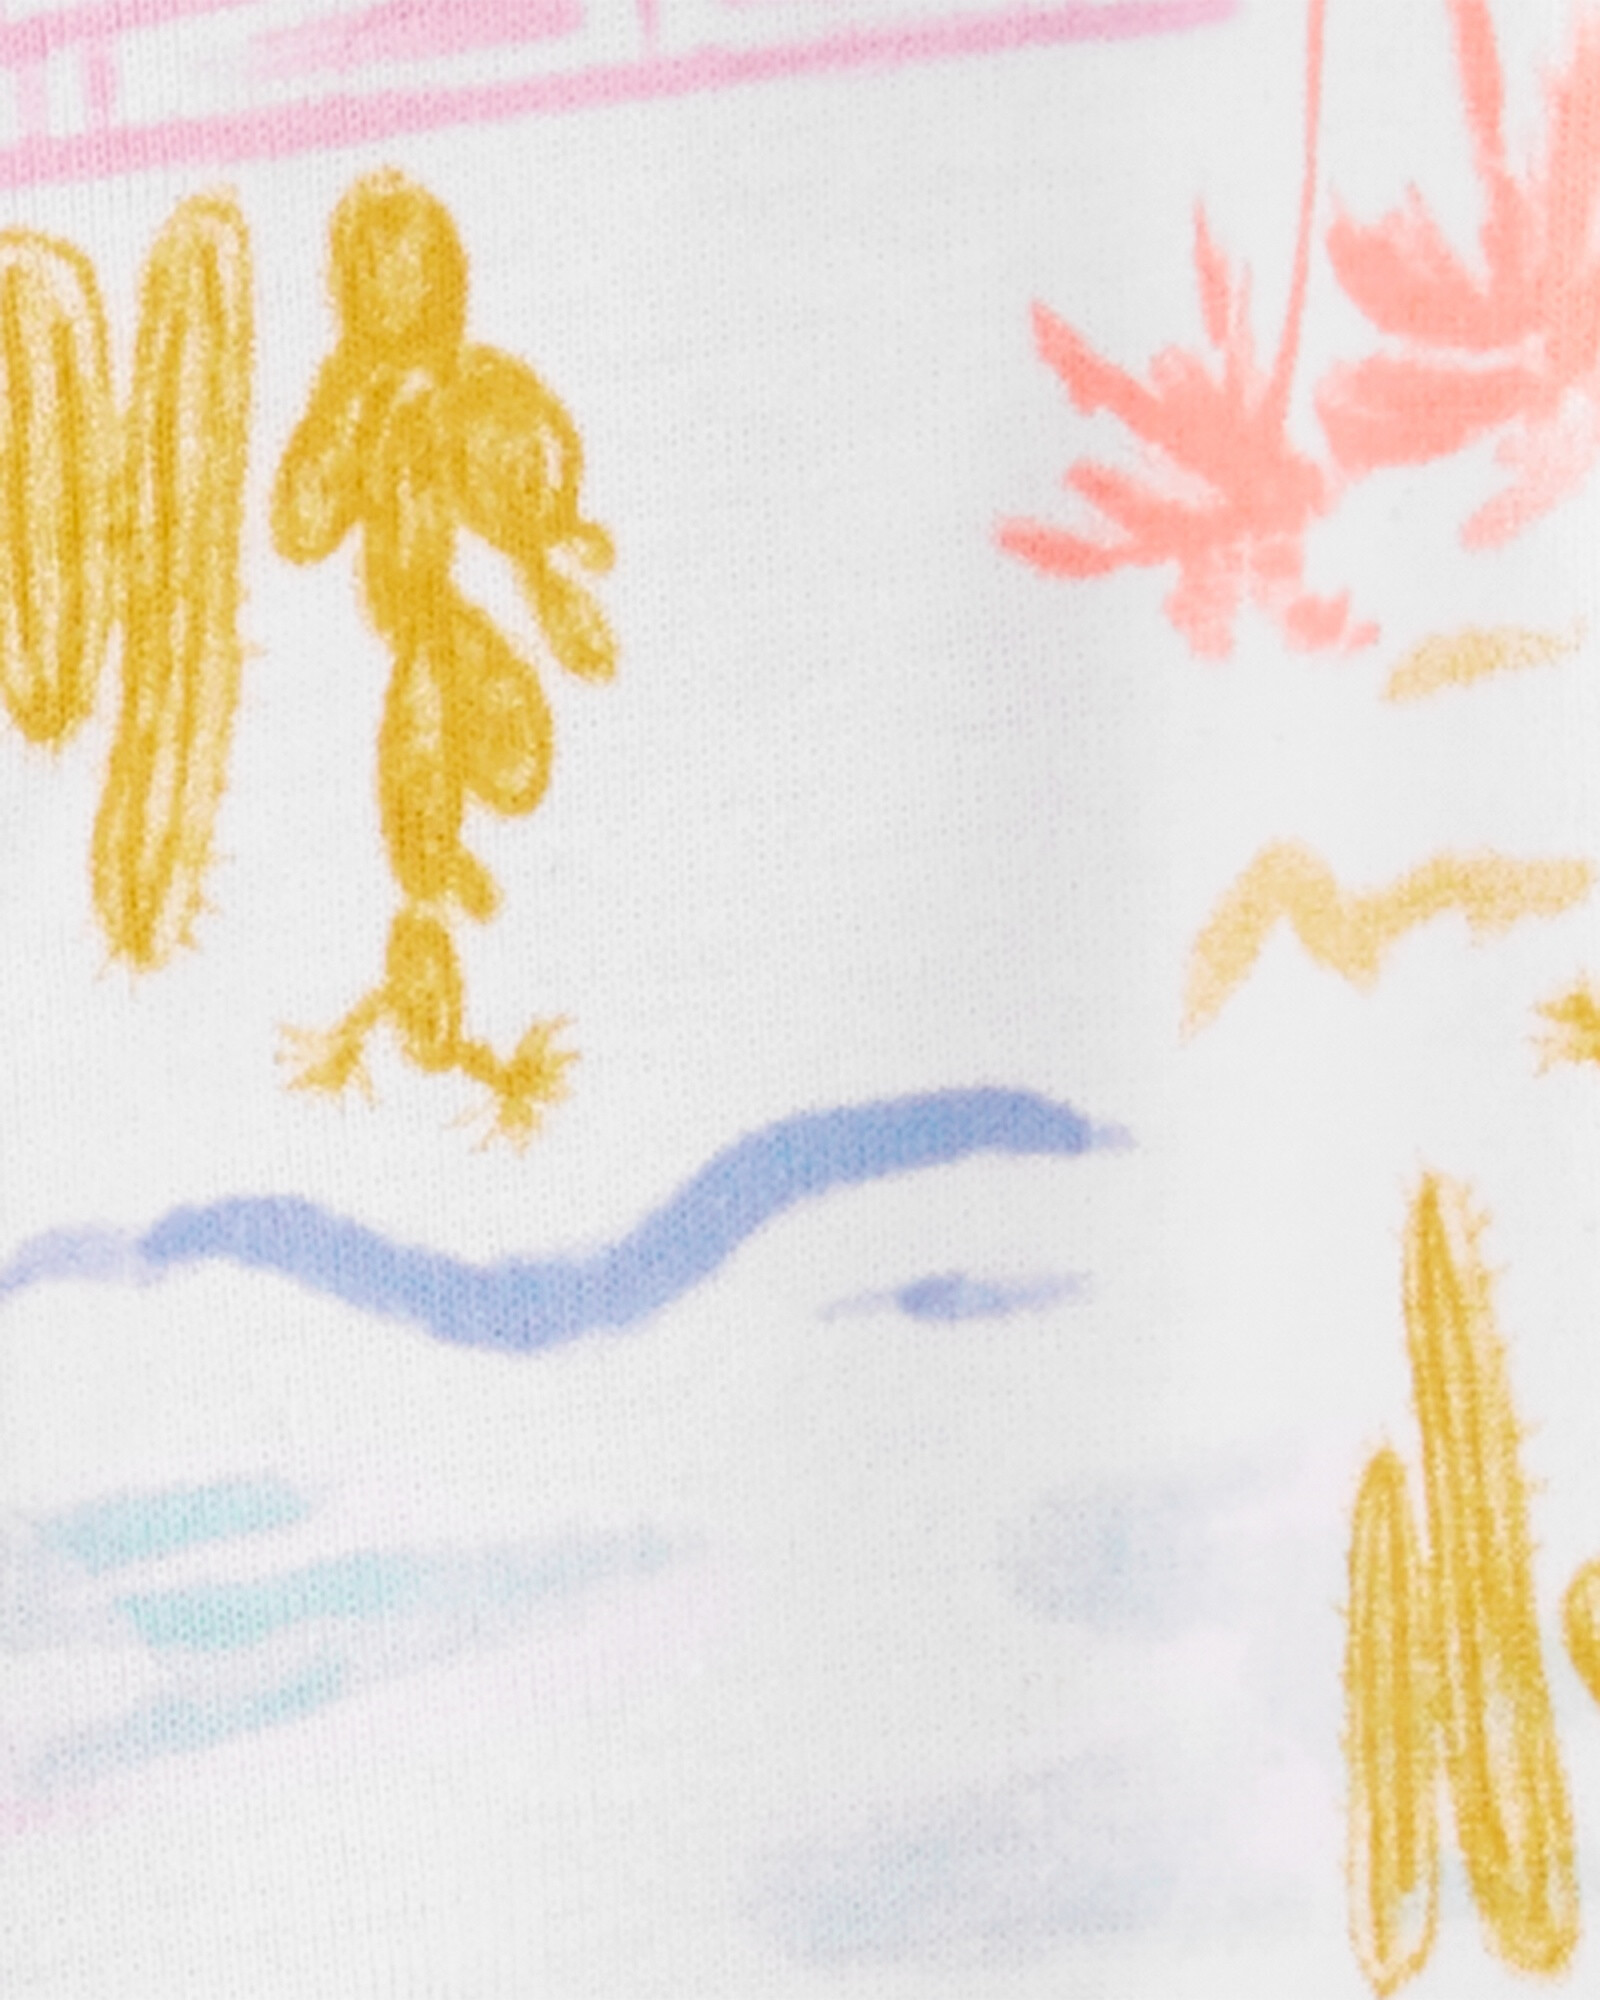 Pijama una pieza de algodón, diseño tropical Sin color